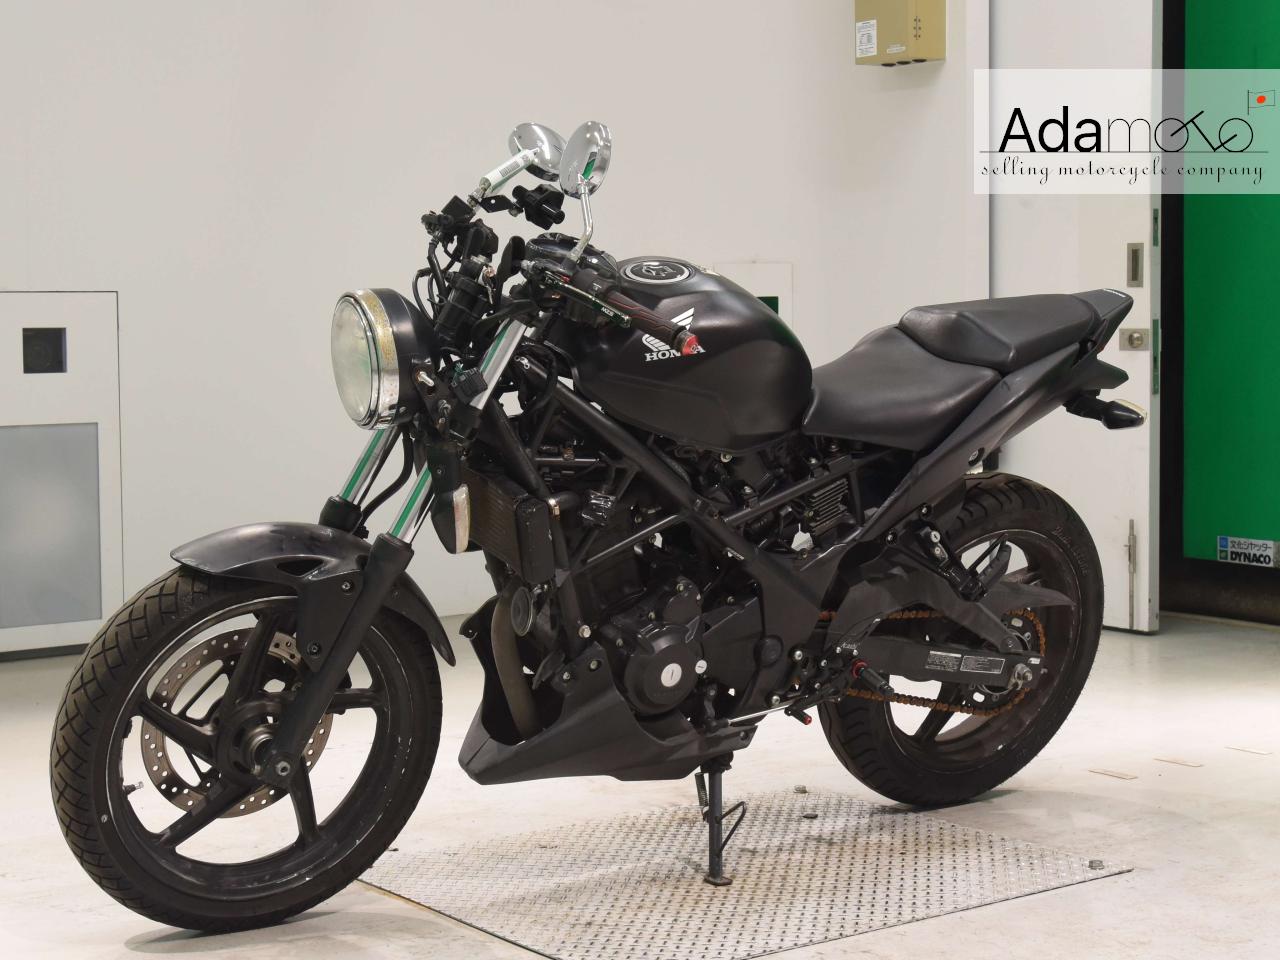 Honda CBR250R 3 - Adamoto - Motorcycles from Japan